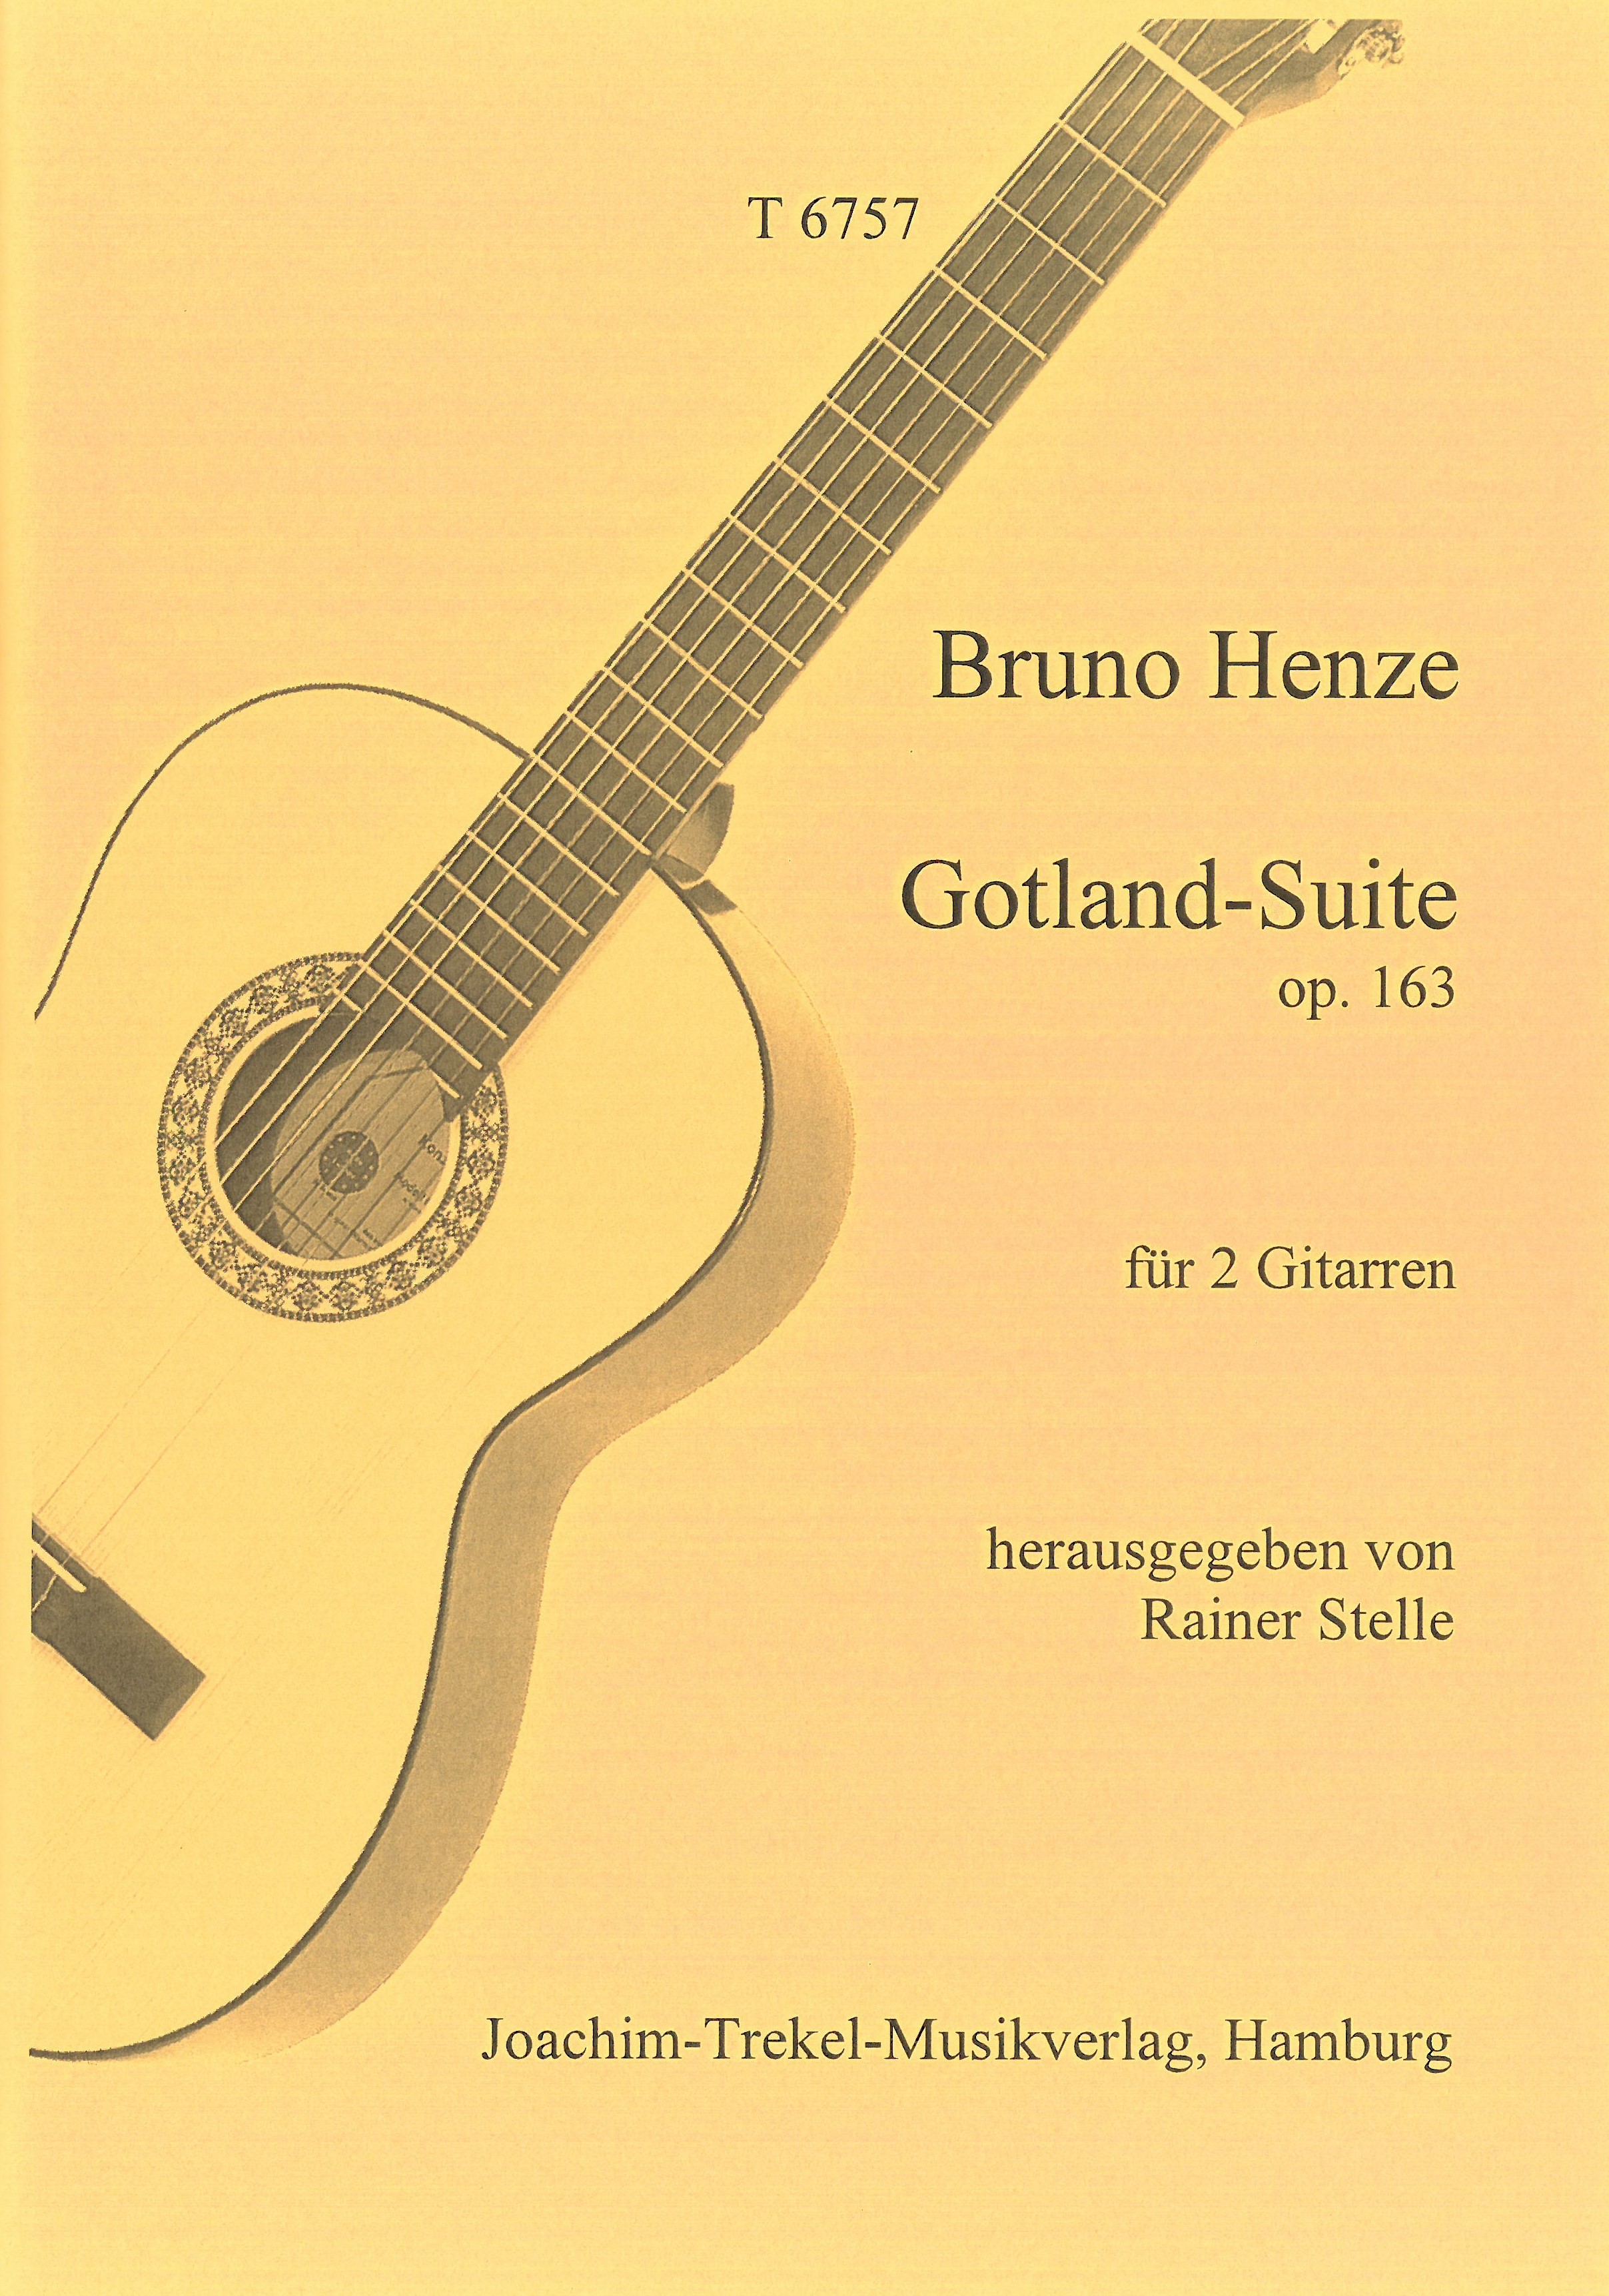 Gotland-Suite op. 163